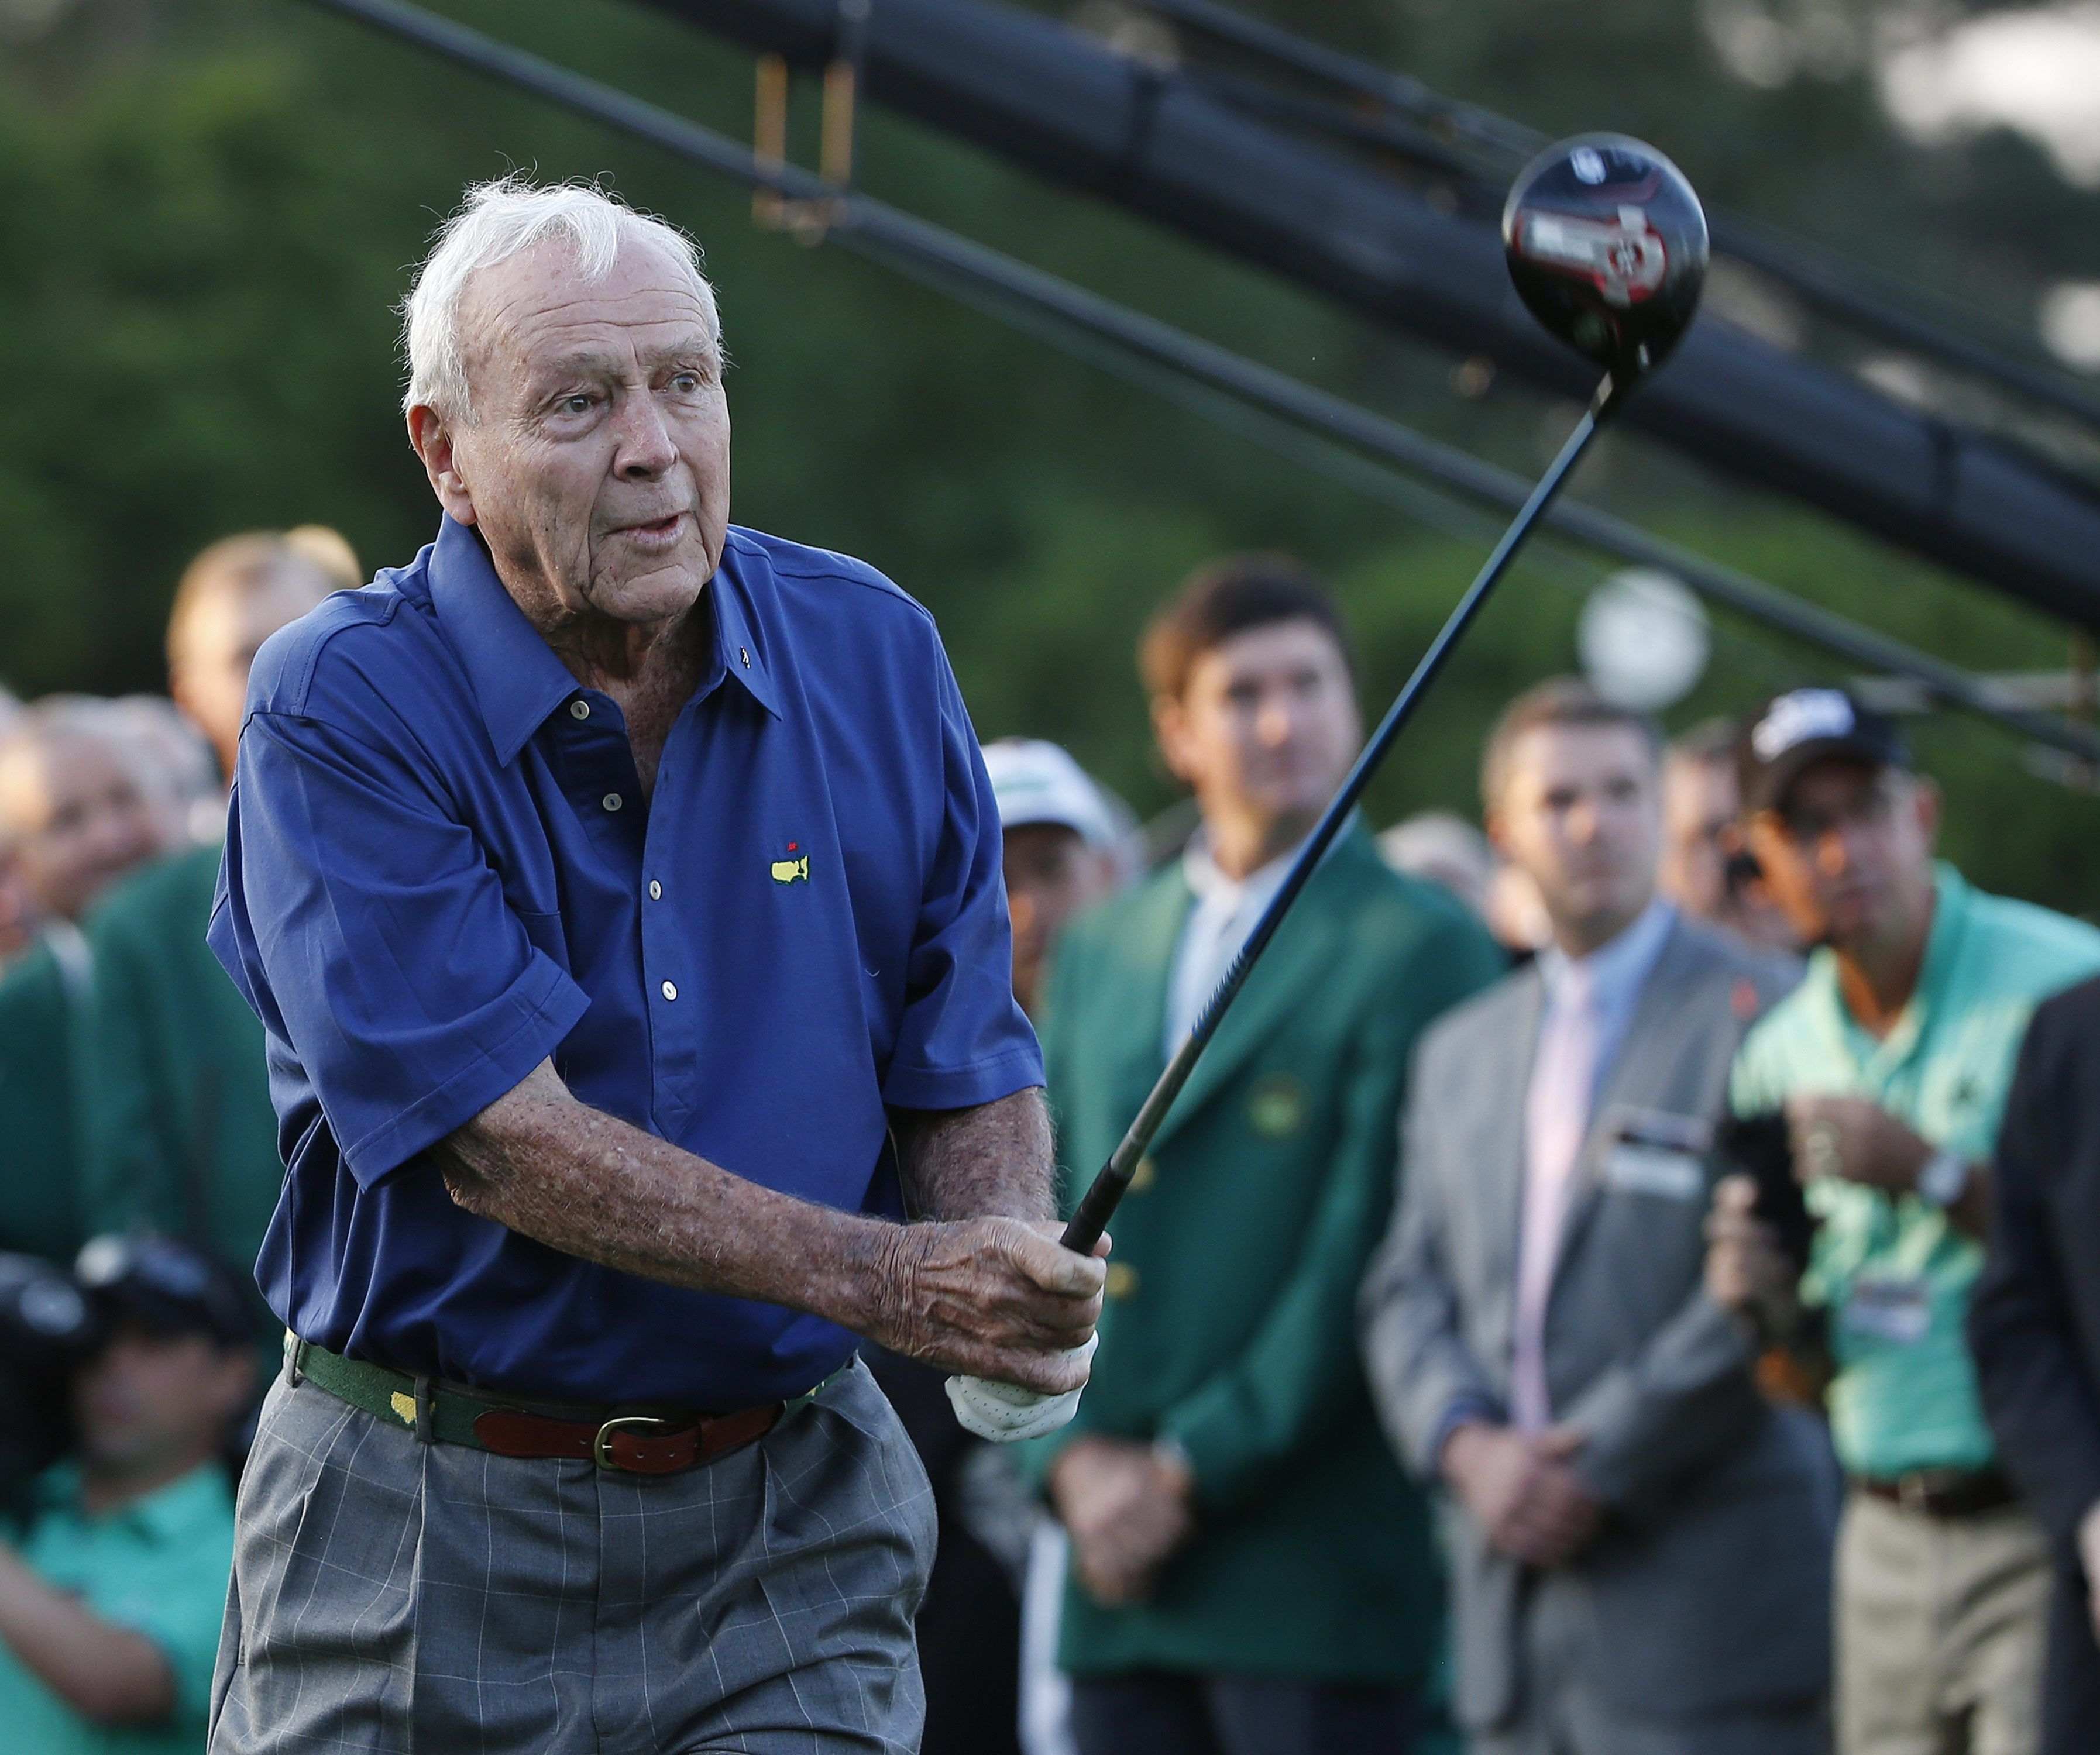 Mor als 87 anys el Rei del golf, Arnold Palmer